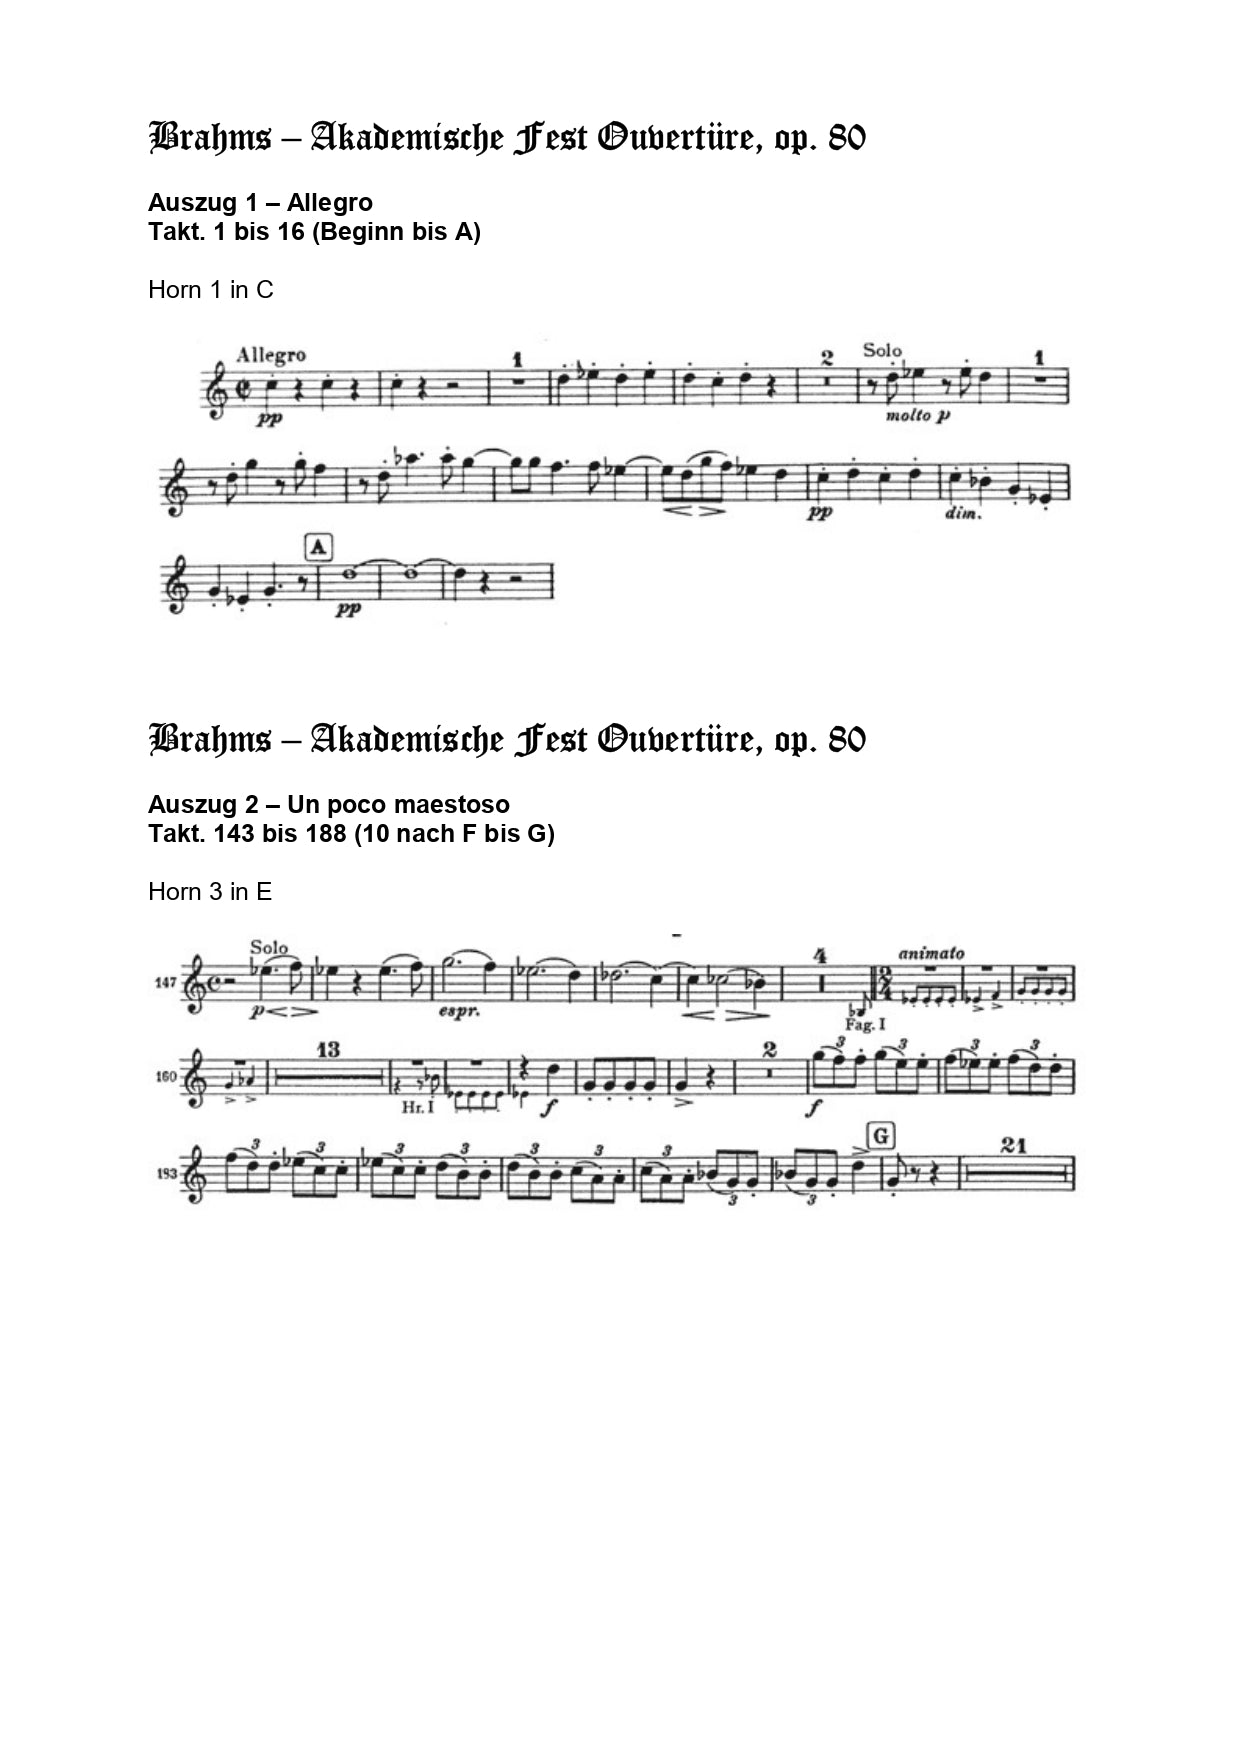 Orchester Studie - Johannes Brahms - Akademische Festouvertüre - Horn 1,3